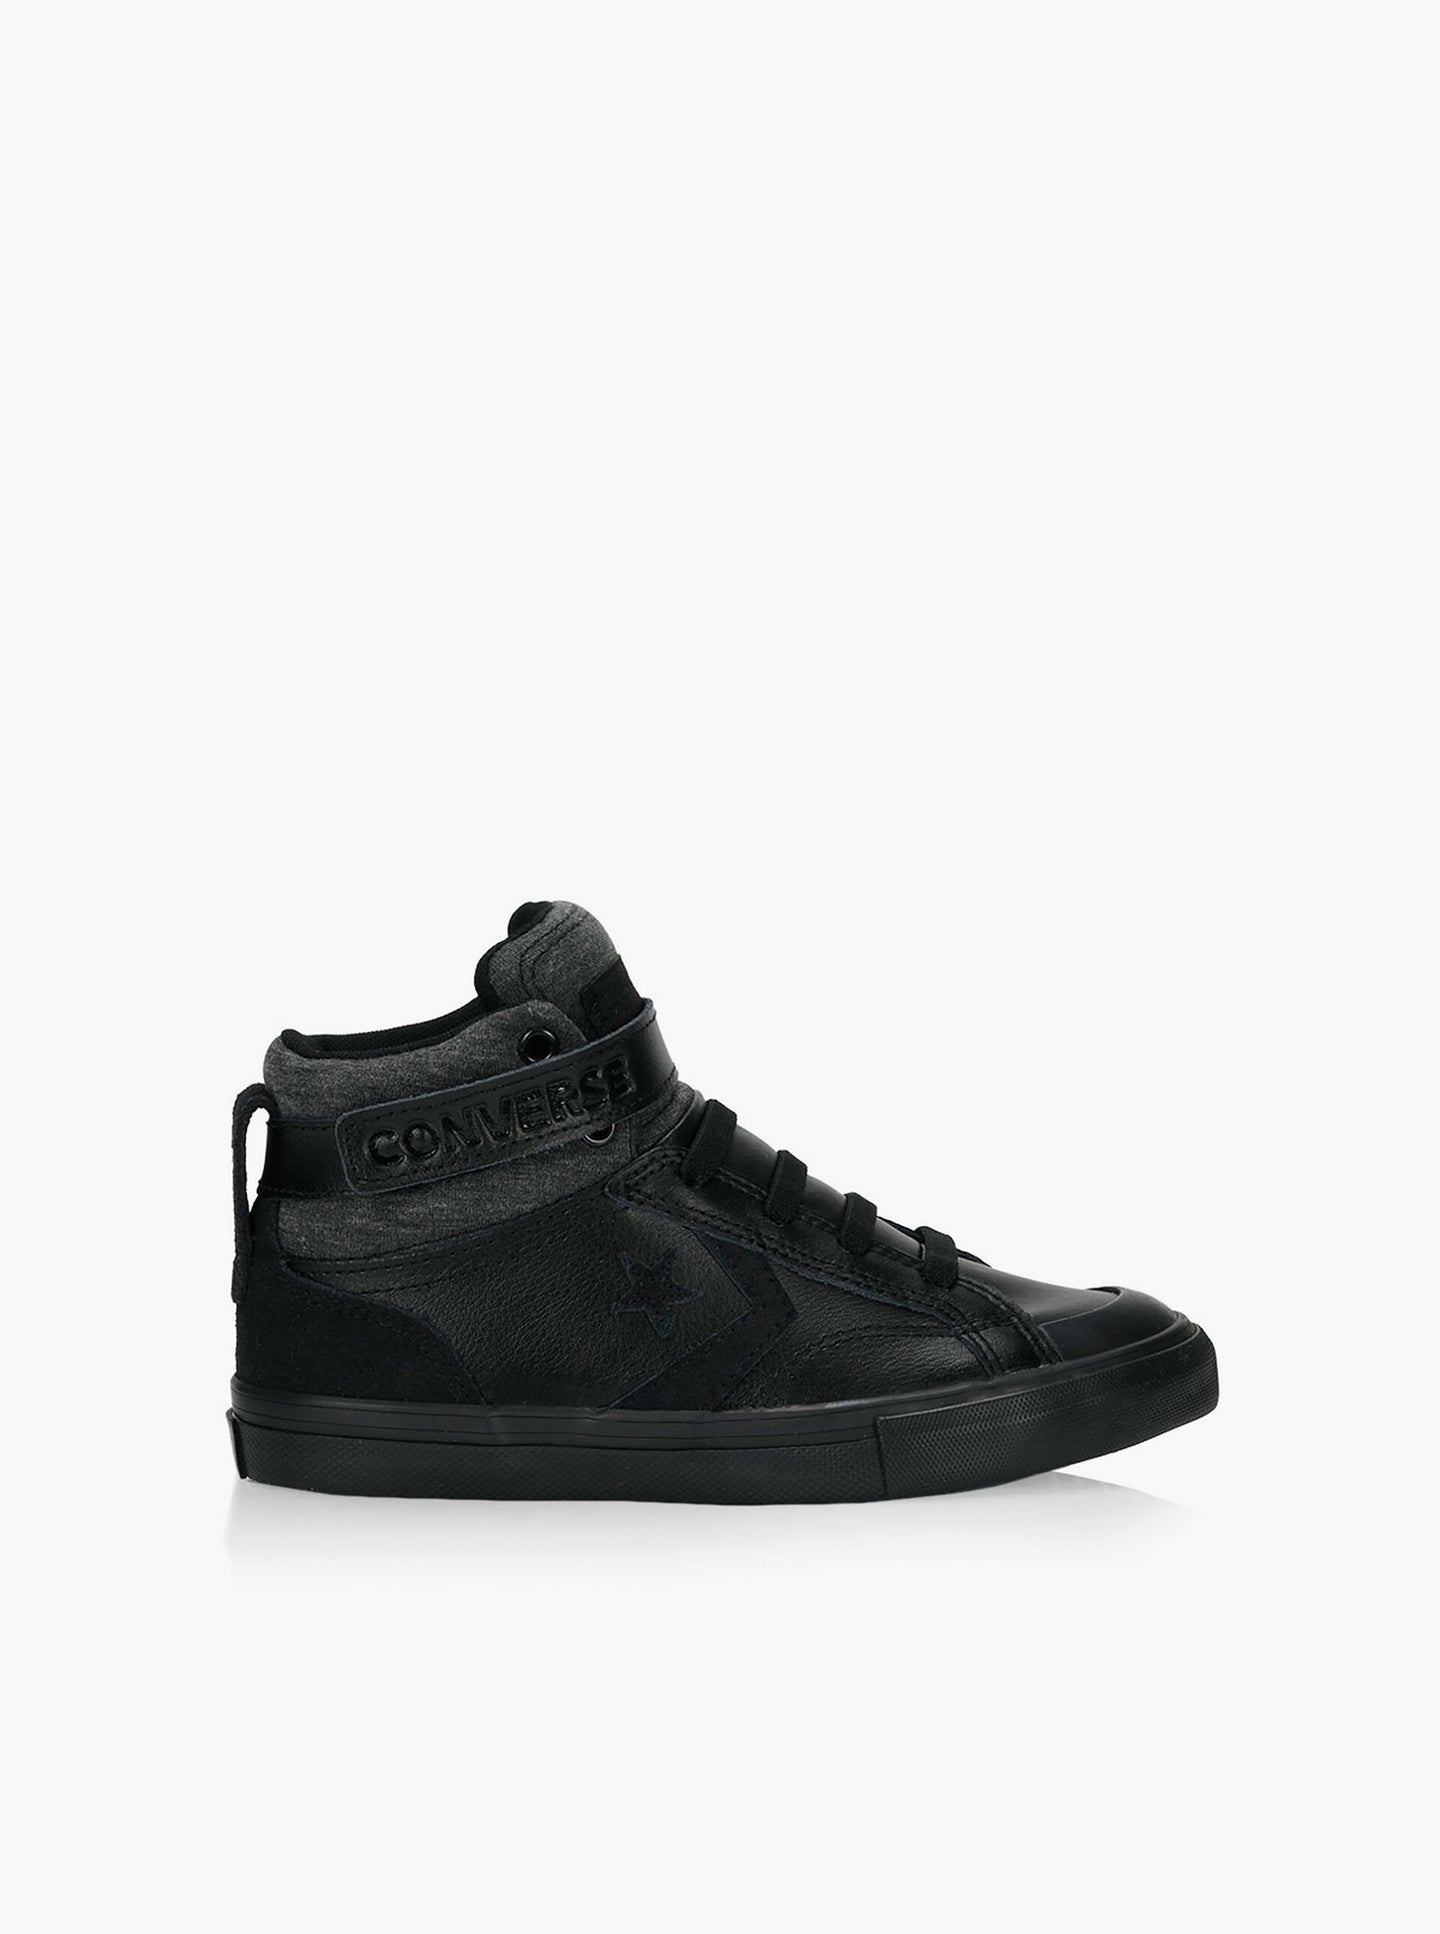 [US2] Converse Pro Blaze Strap Hi Sneaker in Black BNWT -  in box